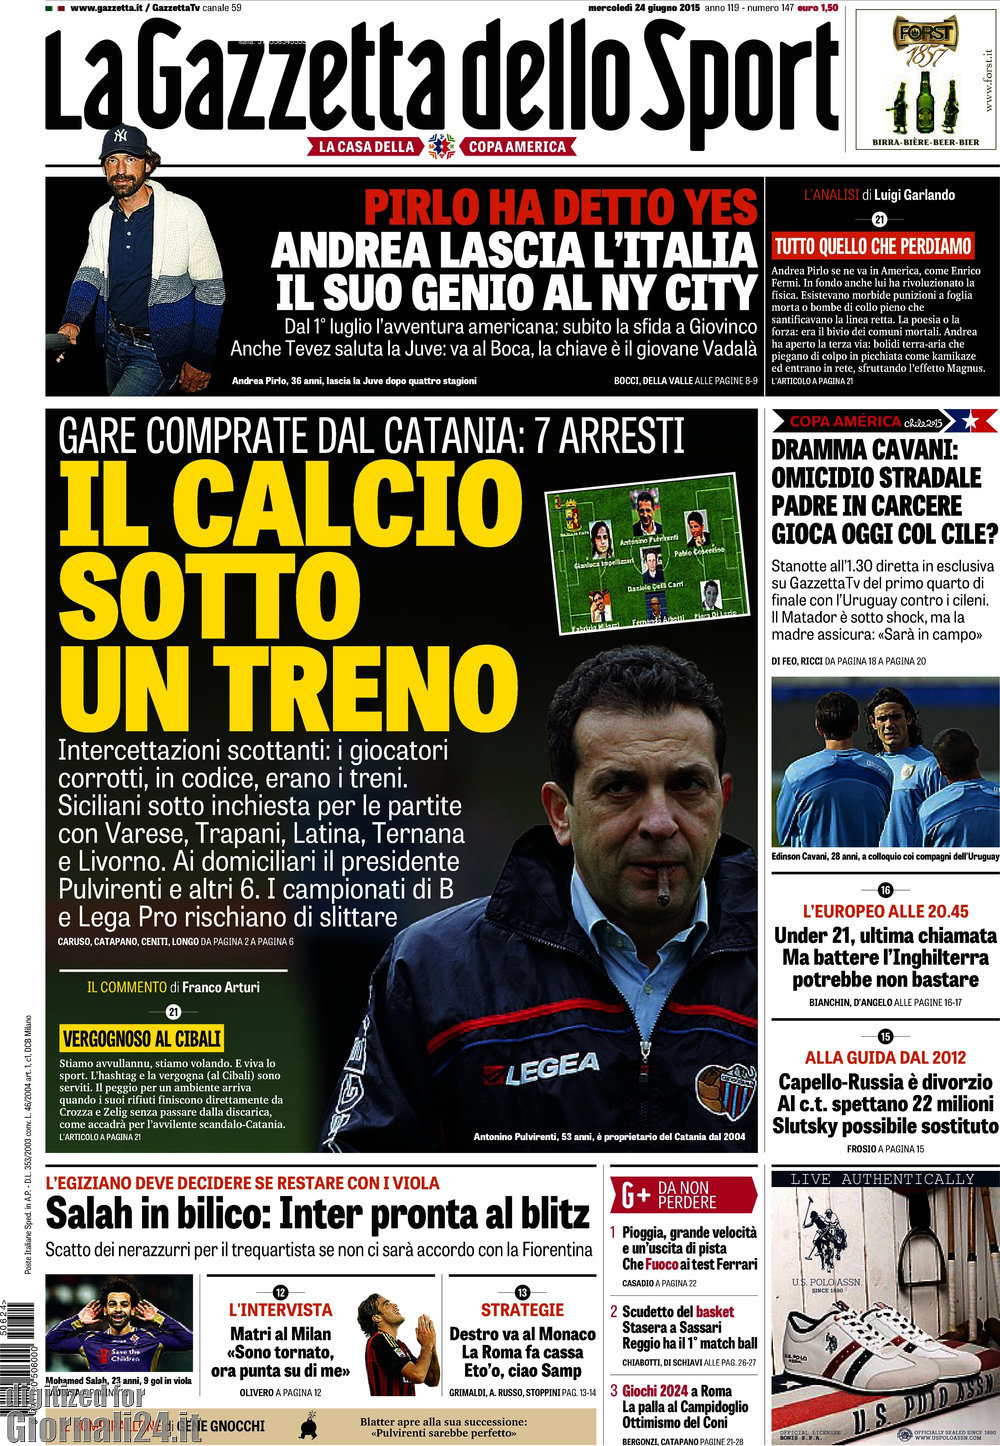 Rassegna stampa 24 giugno 2015: prime pagine Gazzetta, Corriere e Tuttosport